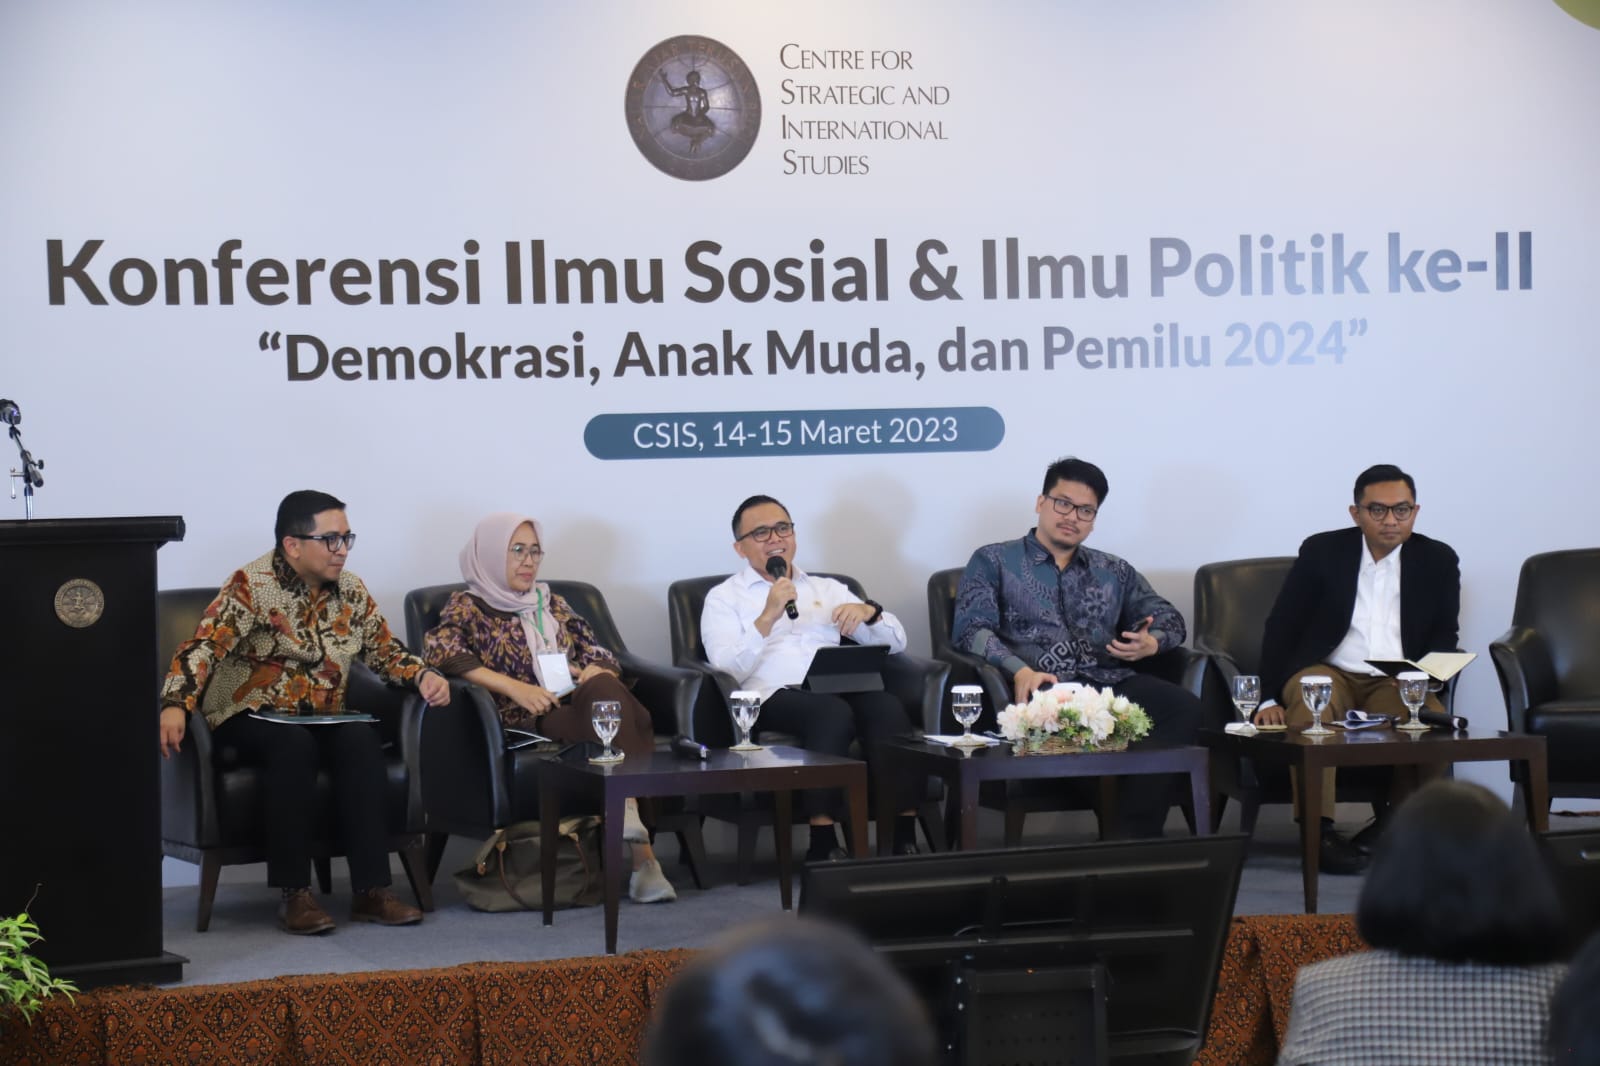 Pemilu 2024, Menpan Imbau ASN Tidak Terlibat Politik Praktis, Anas: Pergerakan ASN di Medsos Dipantau